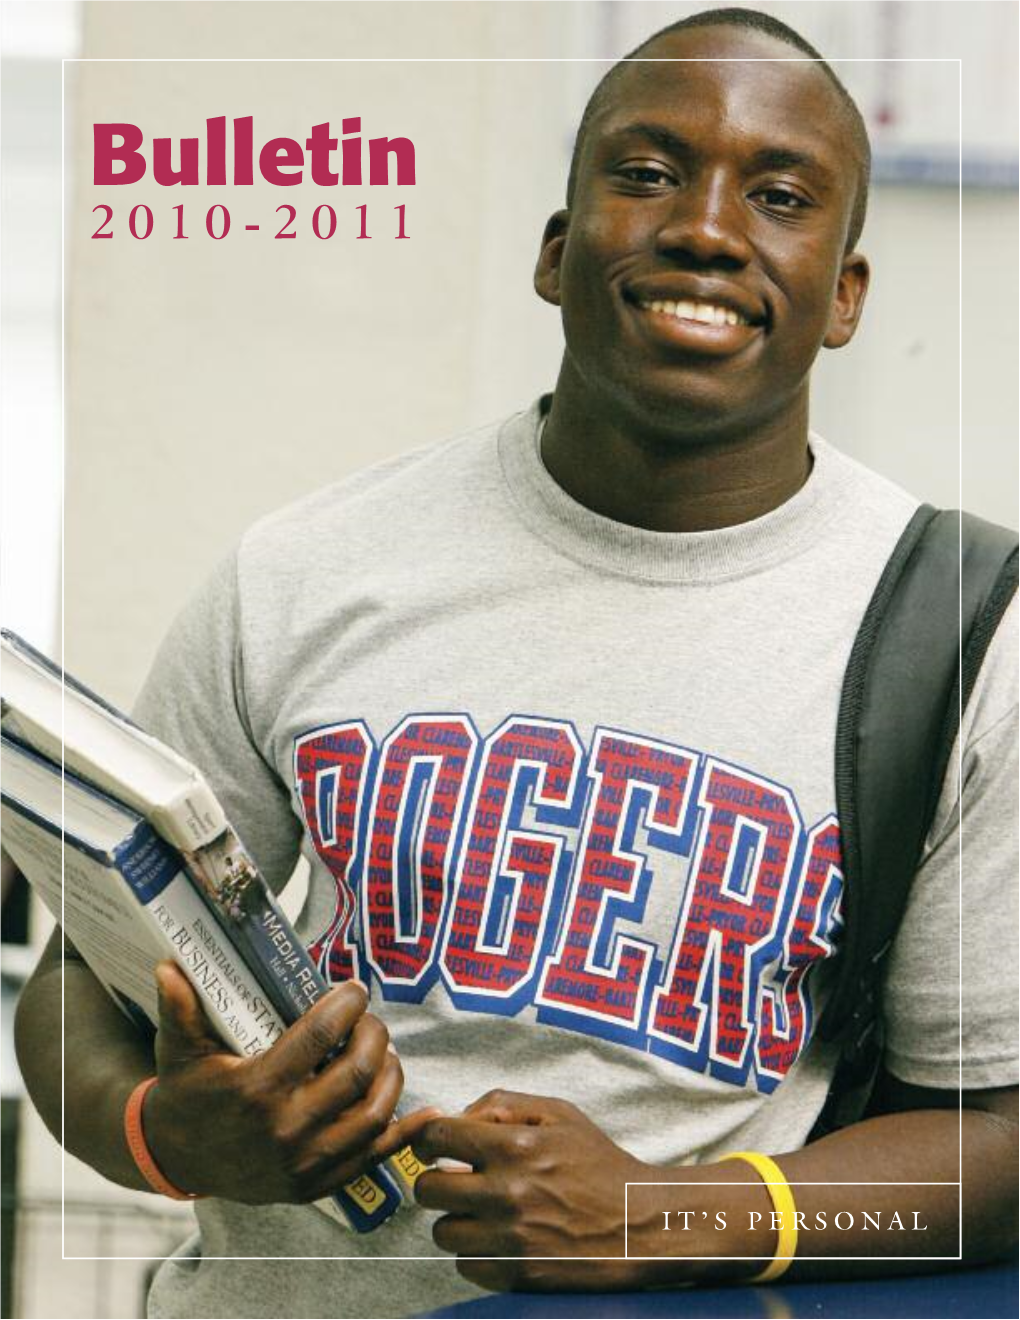 Bulletin 2010-2011